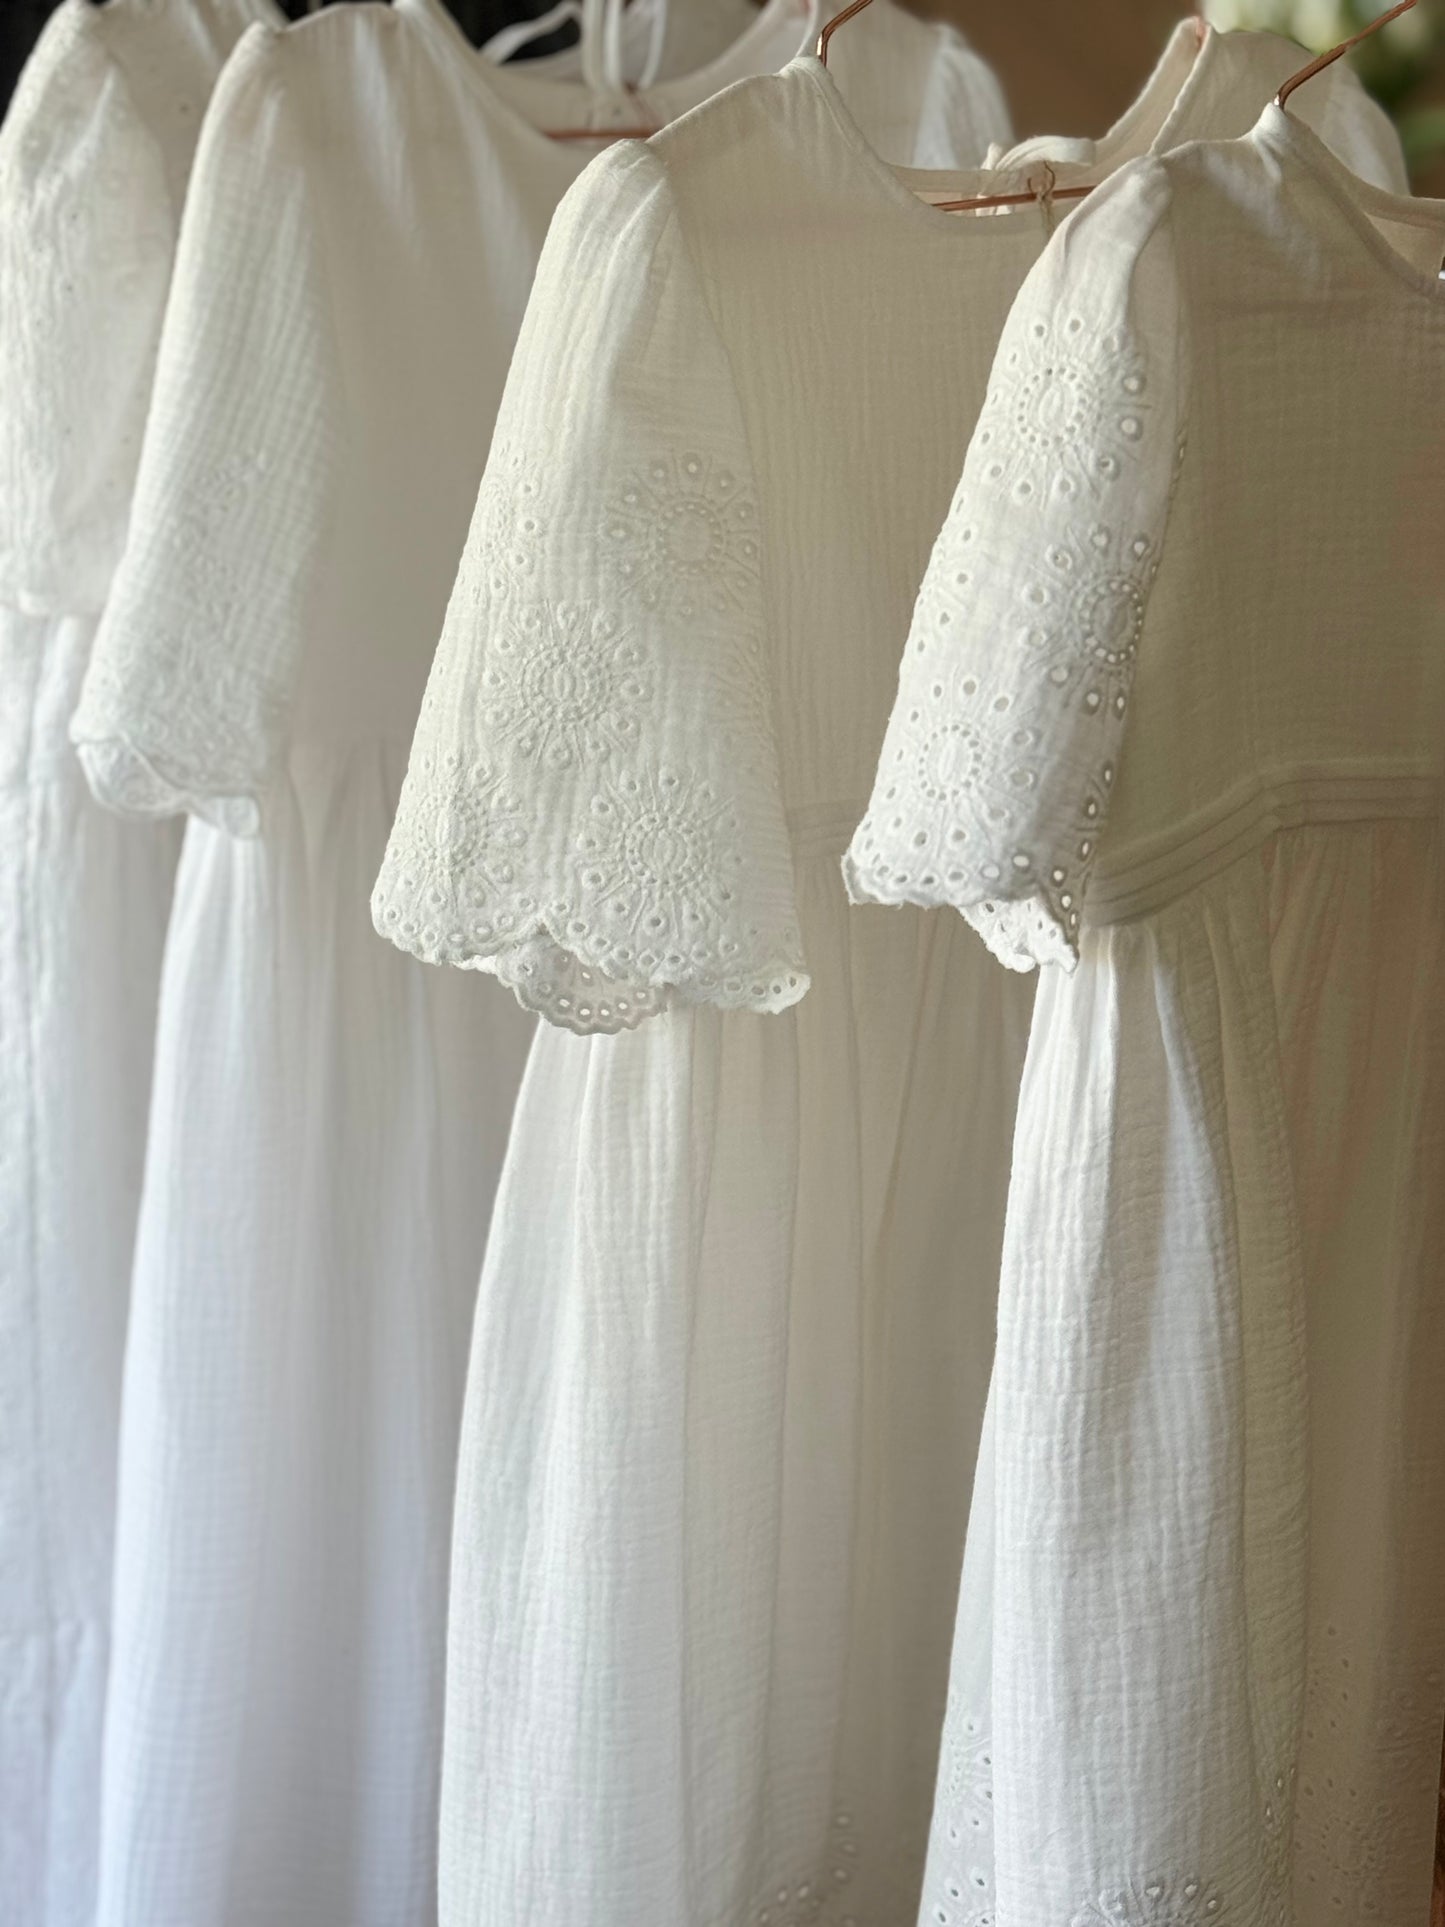 Kleid ILVY in unterschiedlichen Größen, im Vordergrund 2x die Stoff-Variante "Margerite"